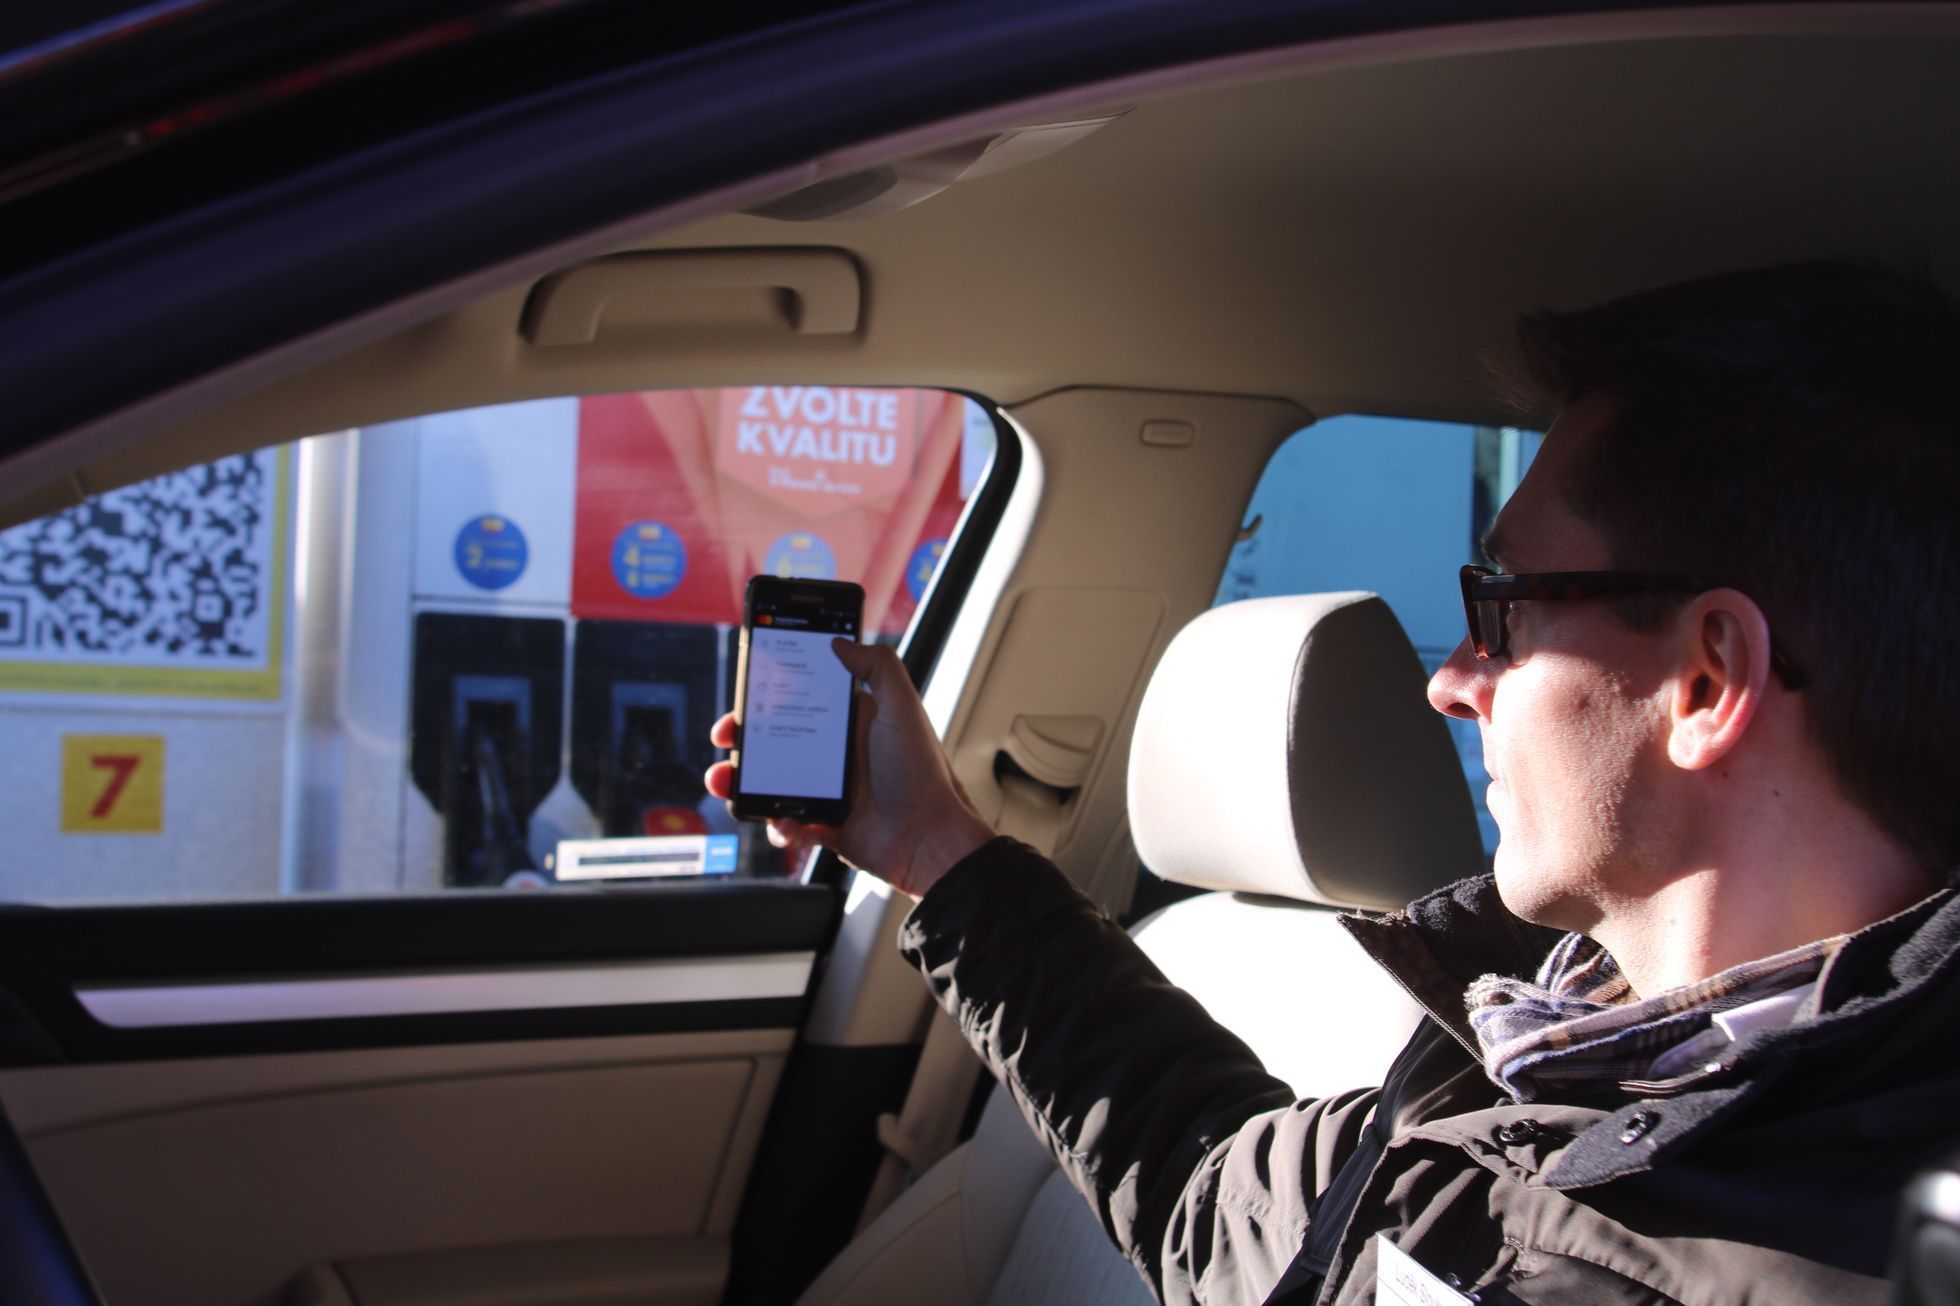 Shell platba v autě s mobilem v ruce